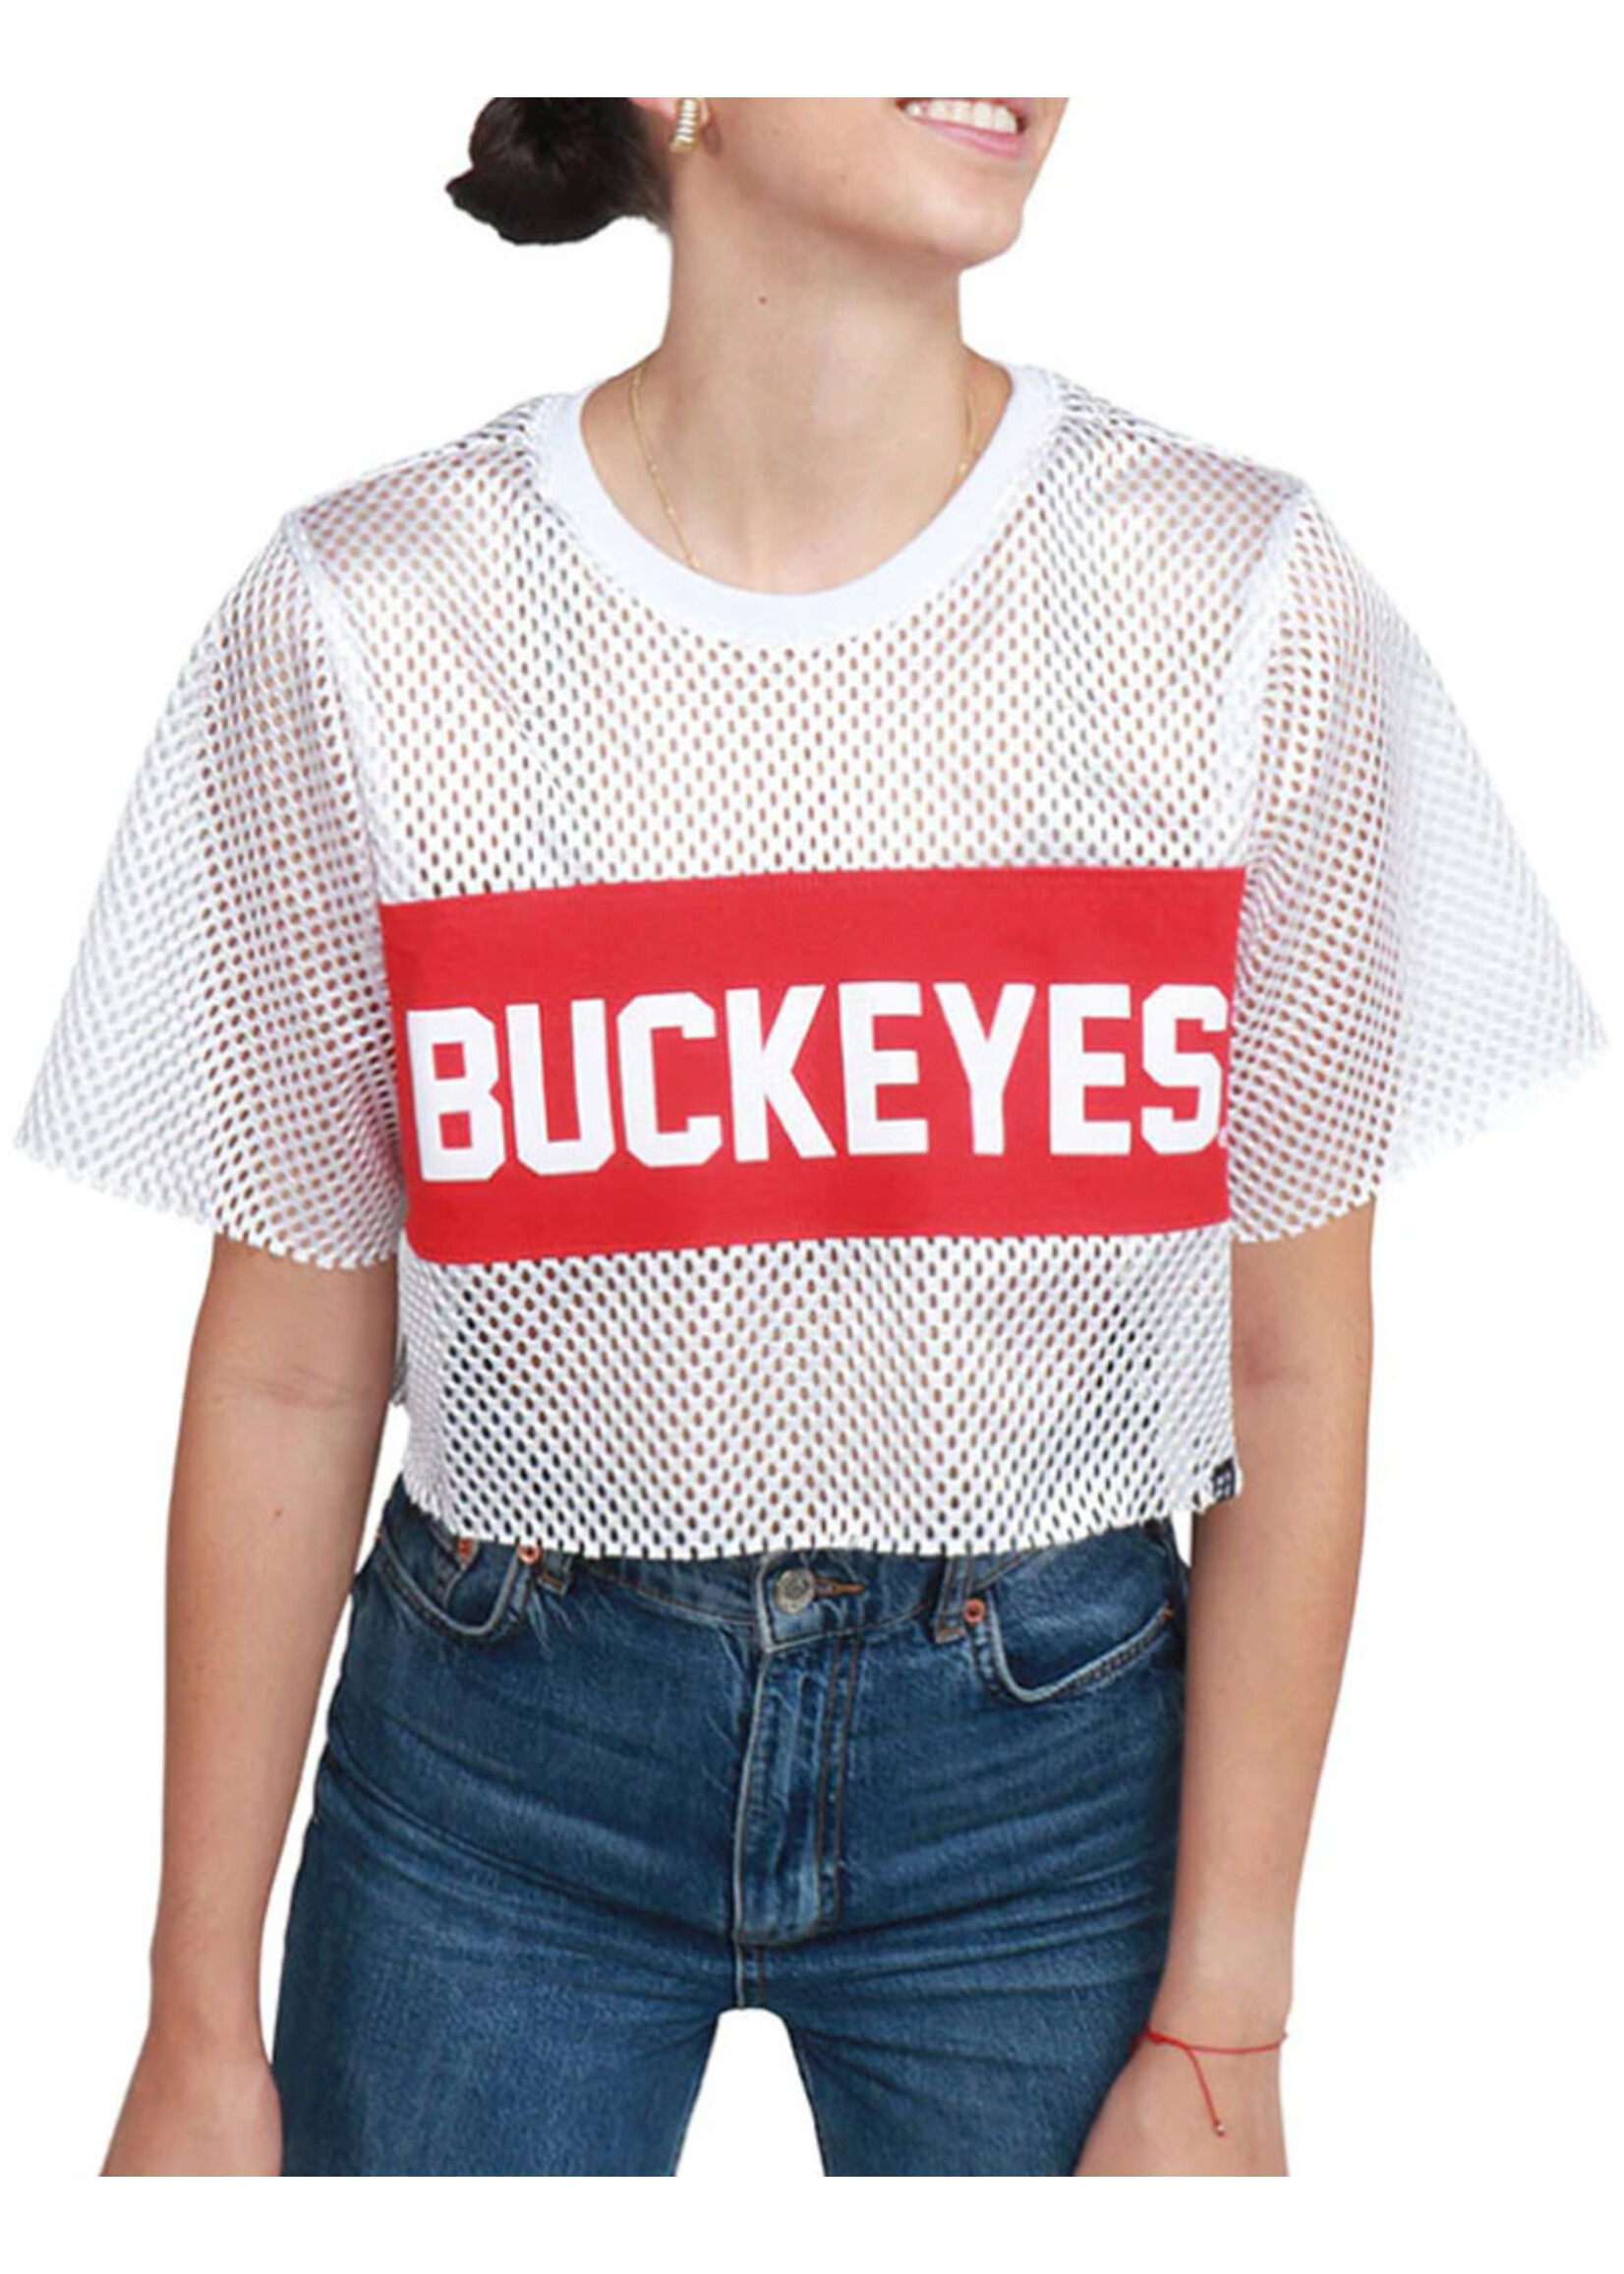 Ohio State Buckeyes Women's Mesh Tee